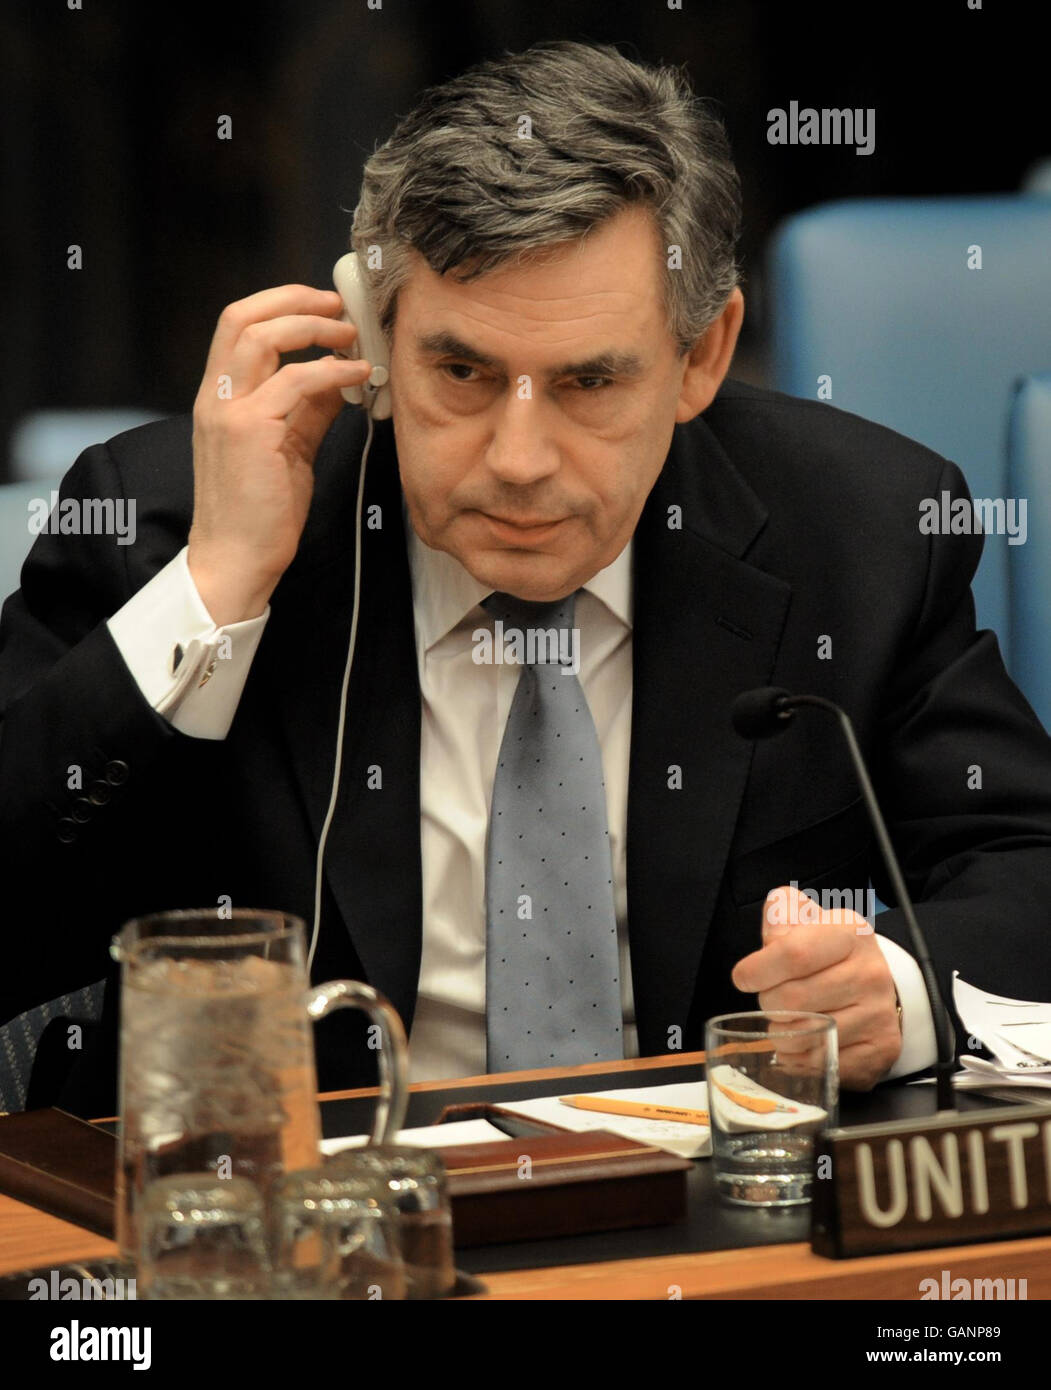 Il primo ministro britannico Gordon Brown attende oggi un discorso al Consiglio di sicurezza delle Nazioni Unite presso la sede delle Nazioni Unite a New York. Foto Stock